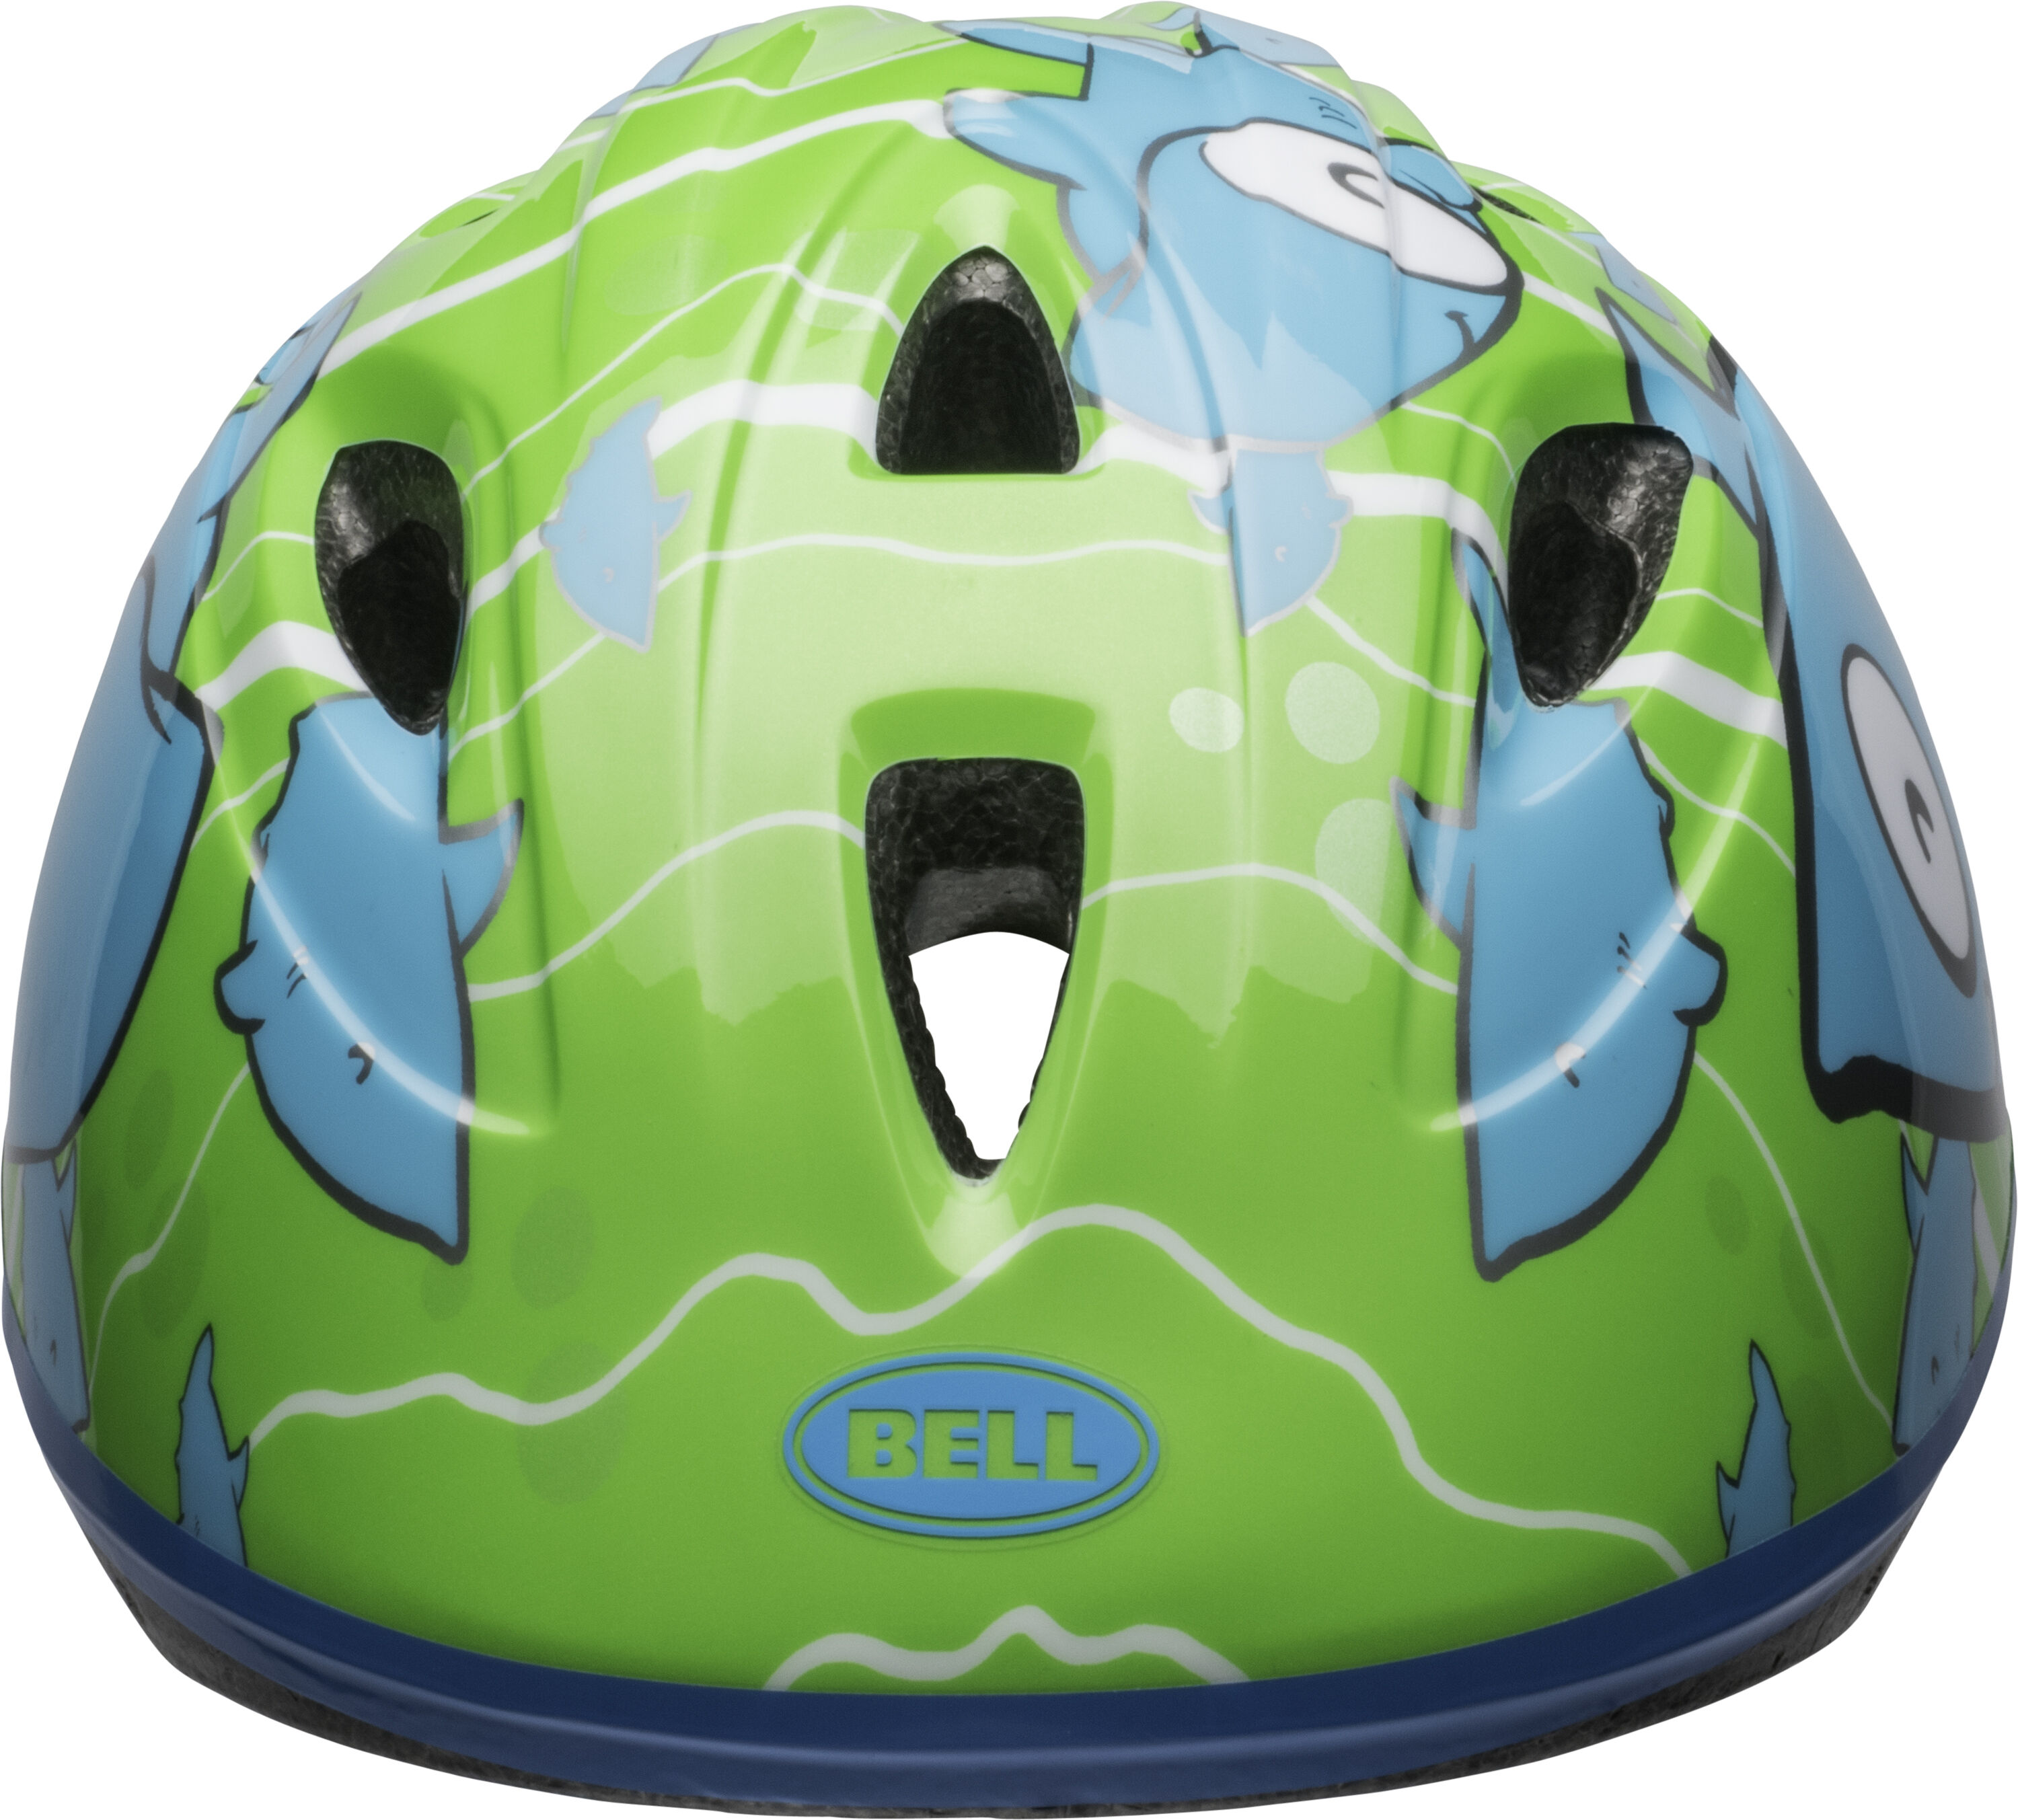 bell infant helmet